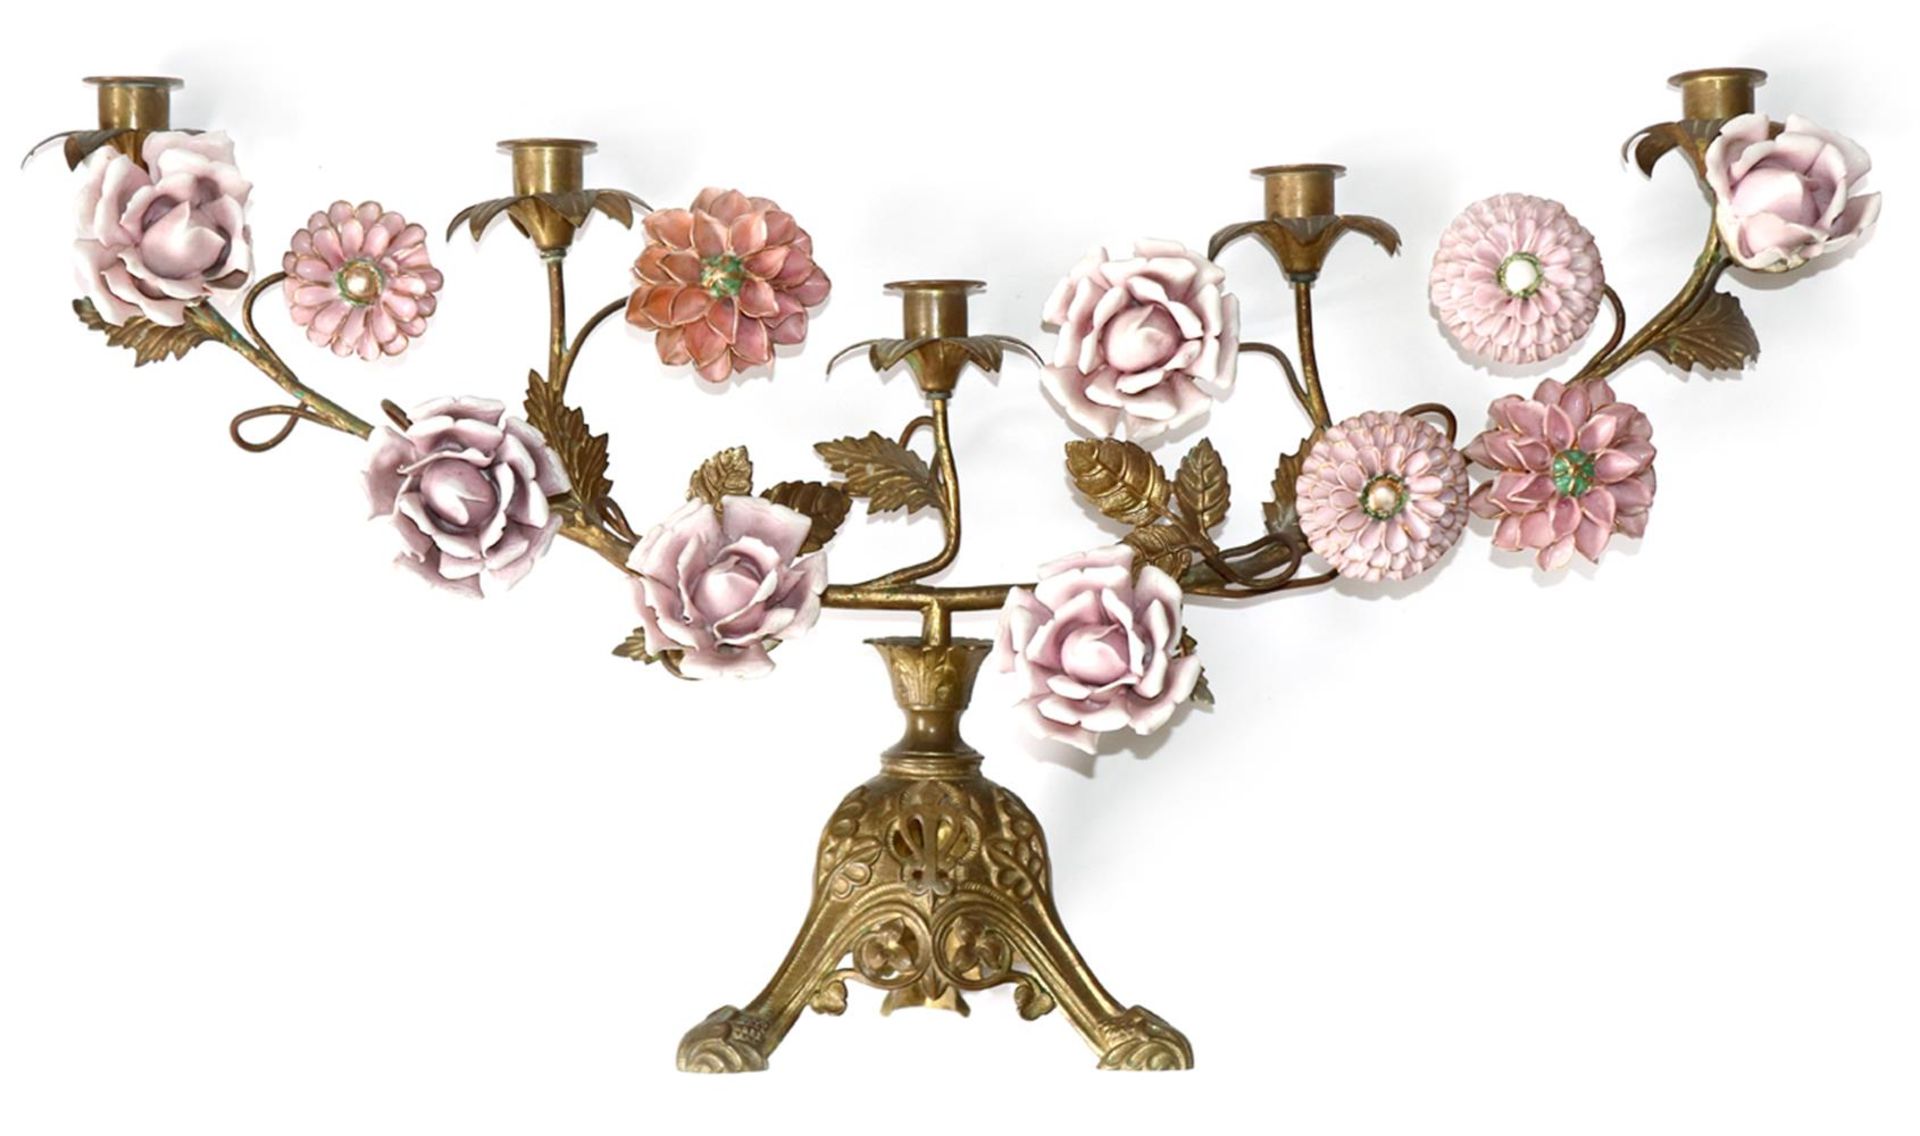 Tischleuchter mit PorzellanblütenTischleuchter mit Porzellanblüten um 1900. MessingkoTisc